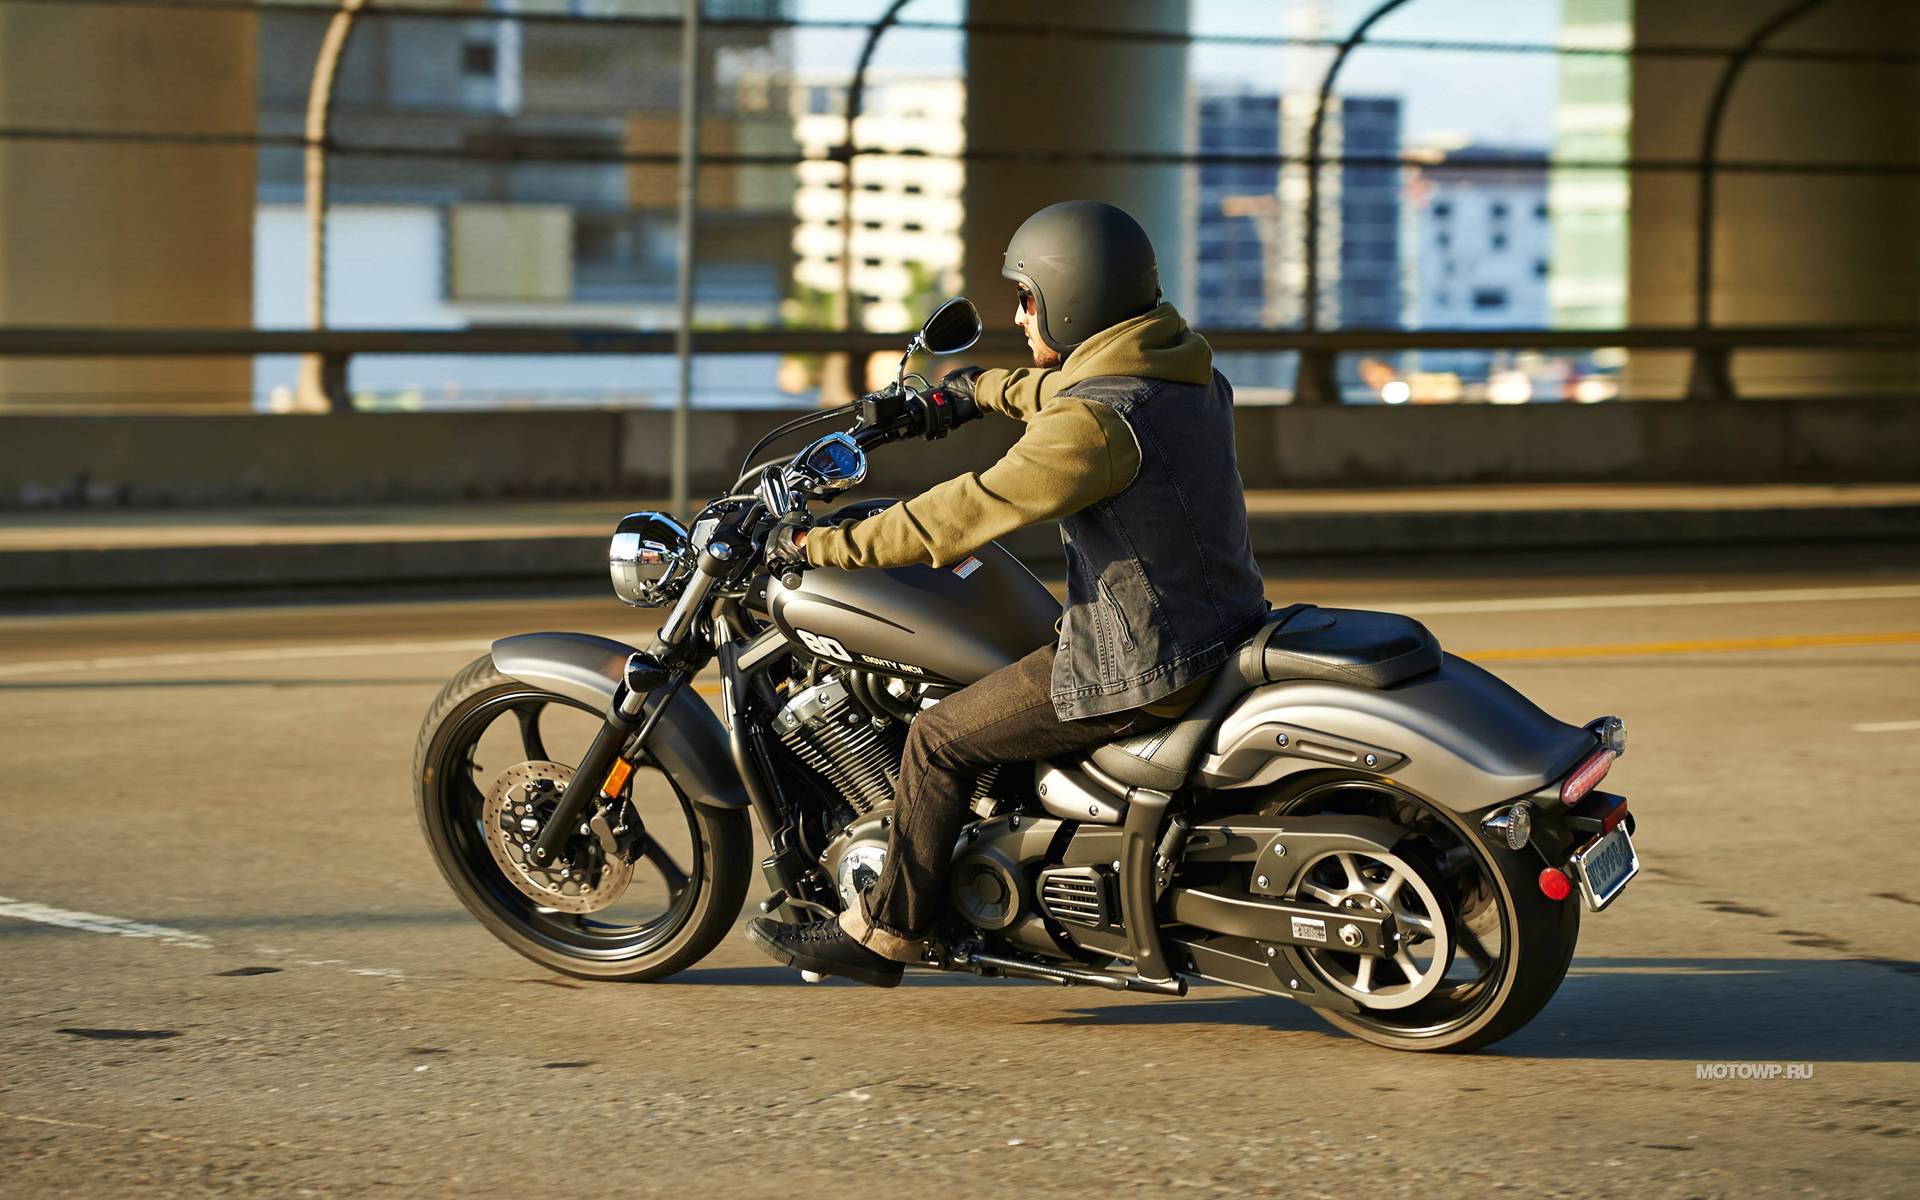 Мотоцикл ямаха xvs 1300 stryker: обзор, технические характеристики, мнения владельцев